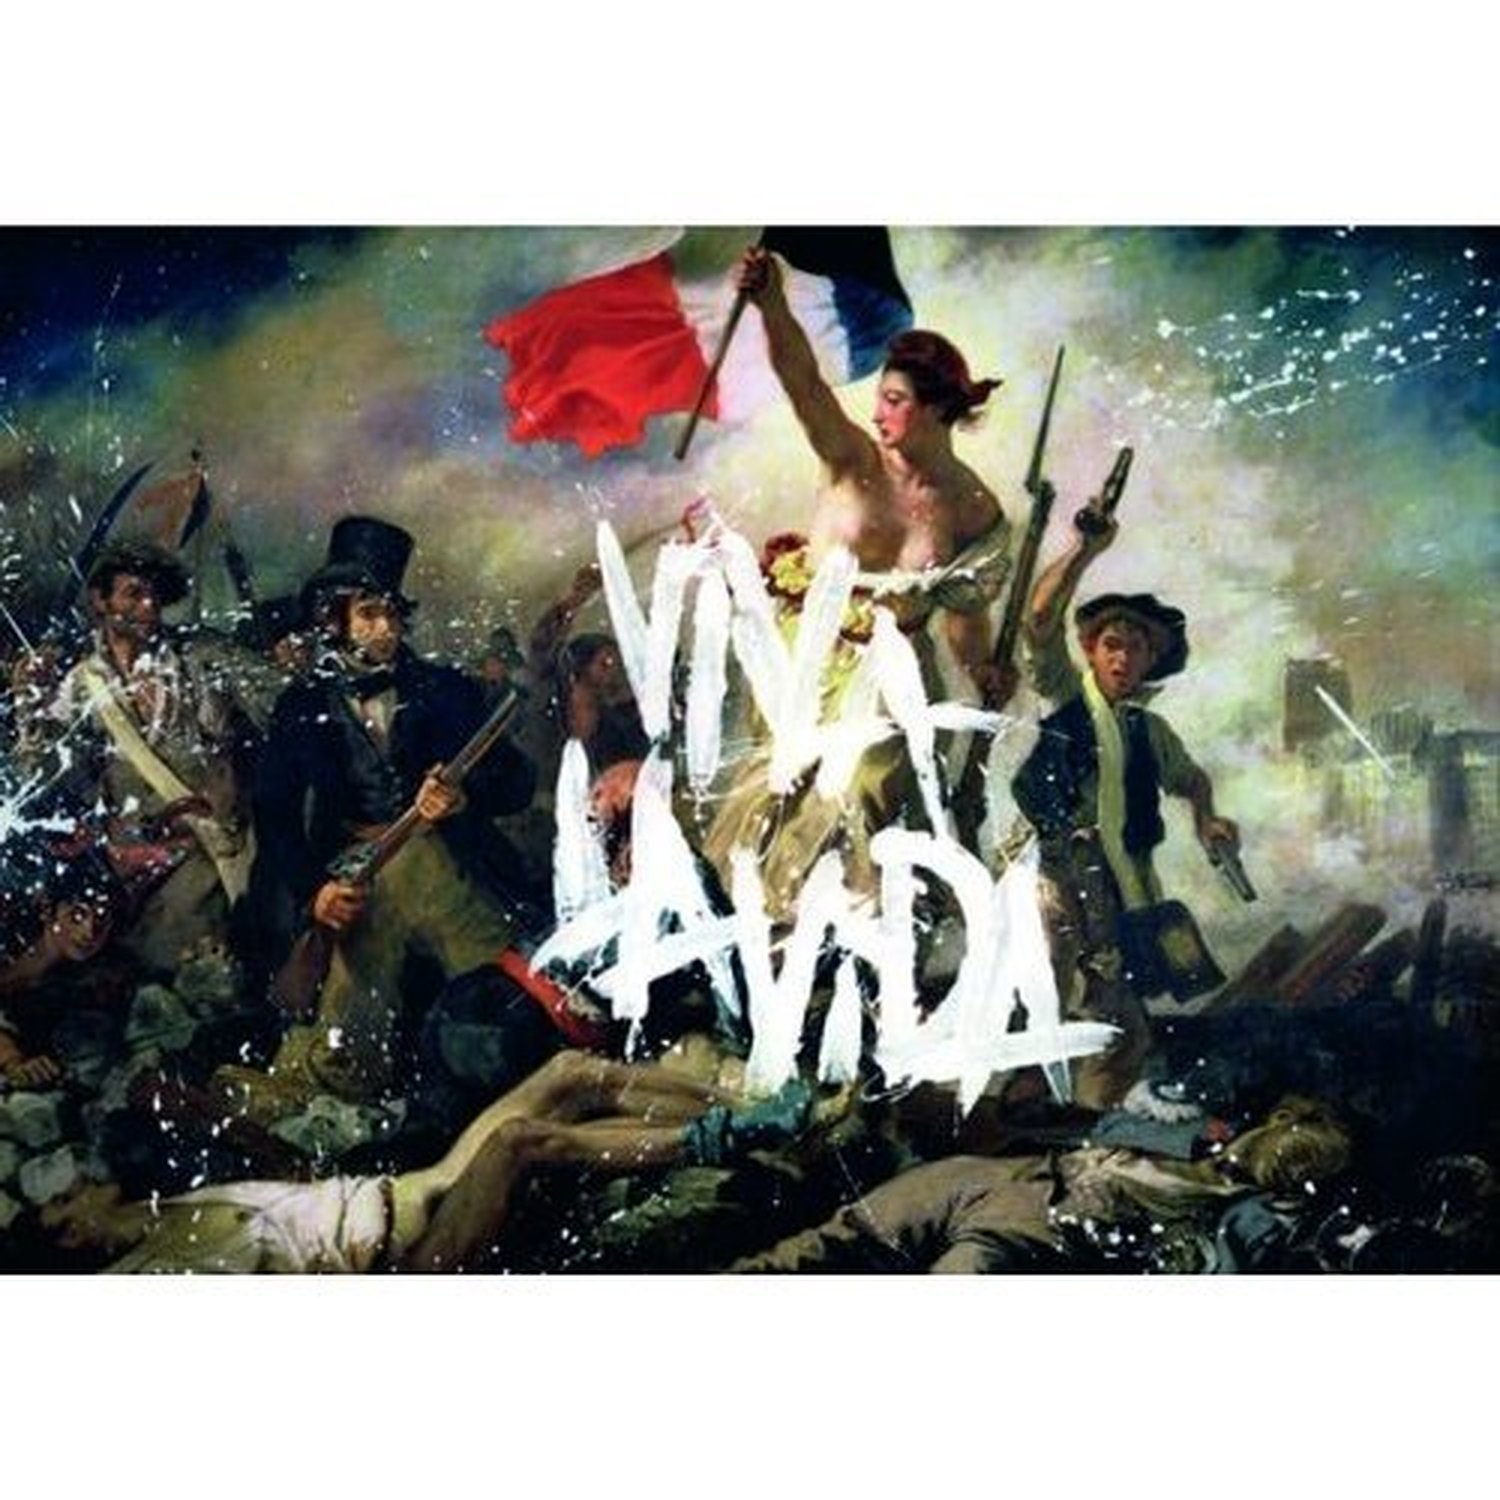 Coldplay Viva La Vida Postcard Album Cover Image Picture Gift 100% ...